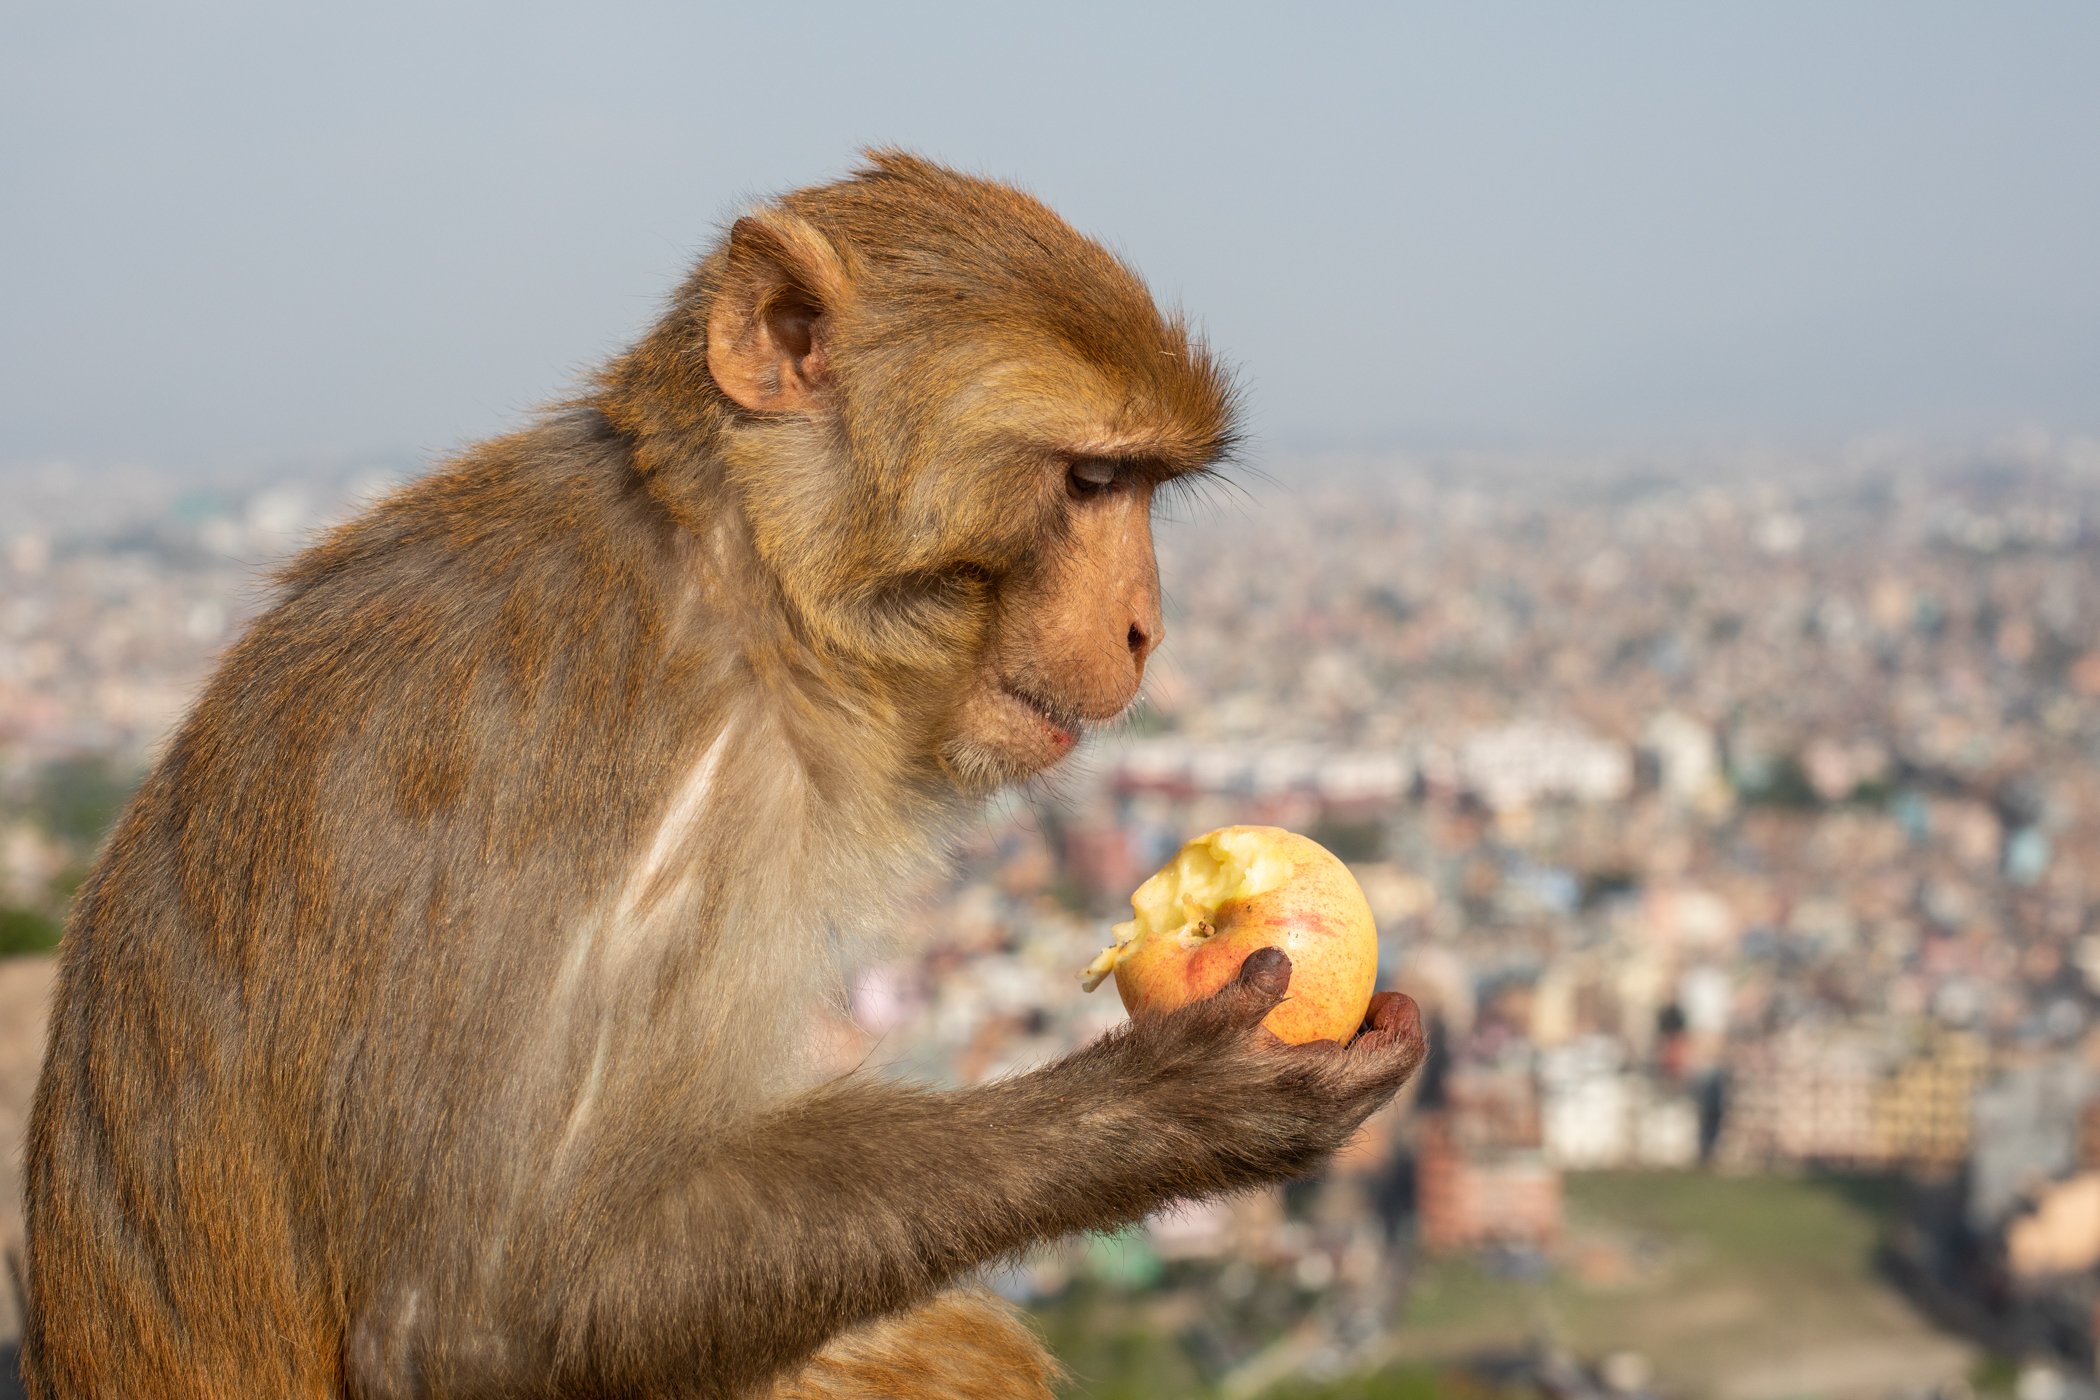 A Monkey enjoys an apple above the City of Kathmandu in Nepal.